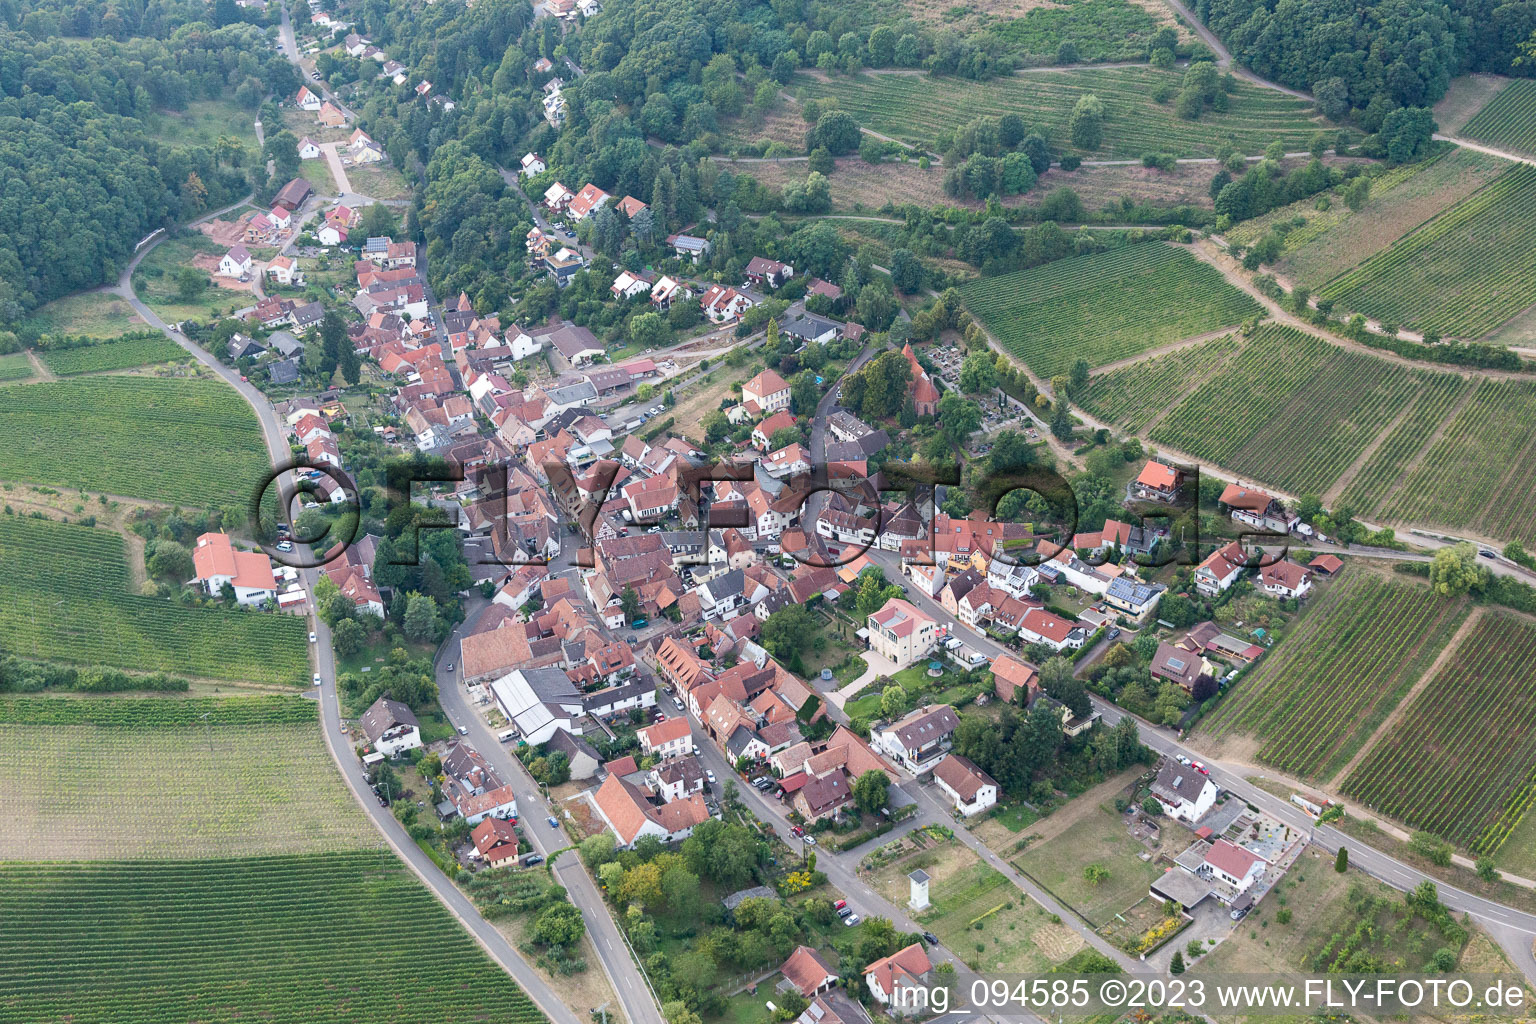 Leinsweiler im Bundesland Rheinland-Pfalz, Deutschland aus der Luft betrachtet